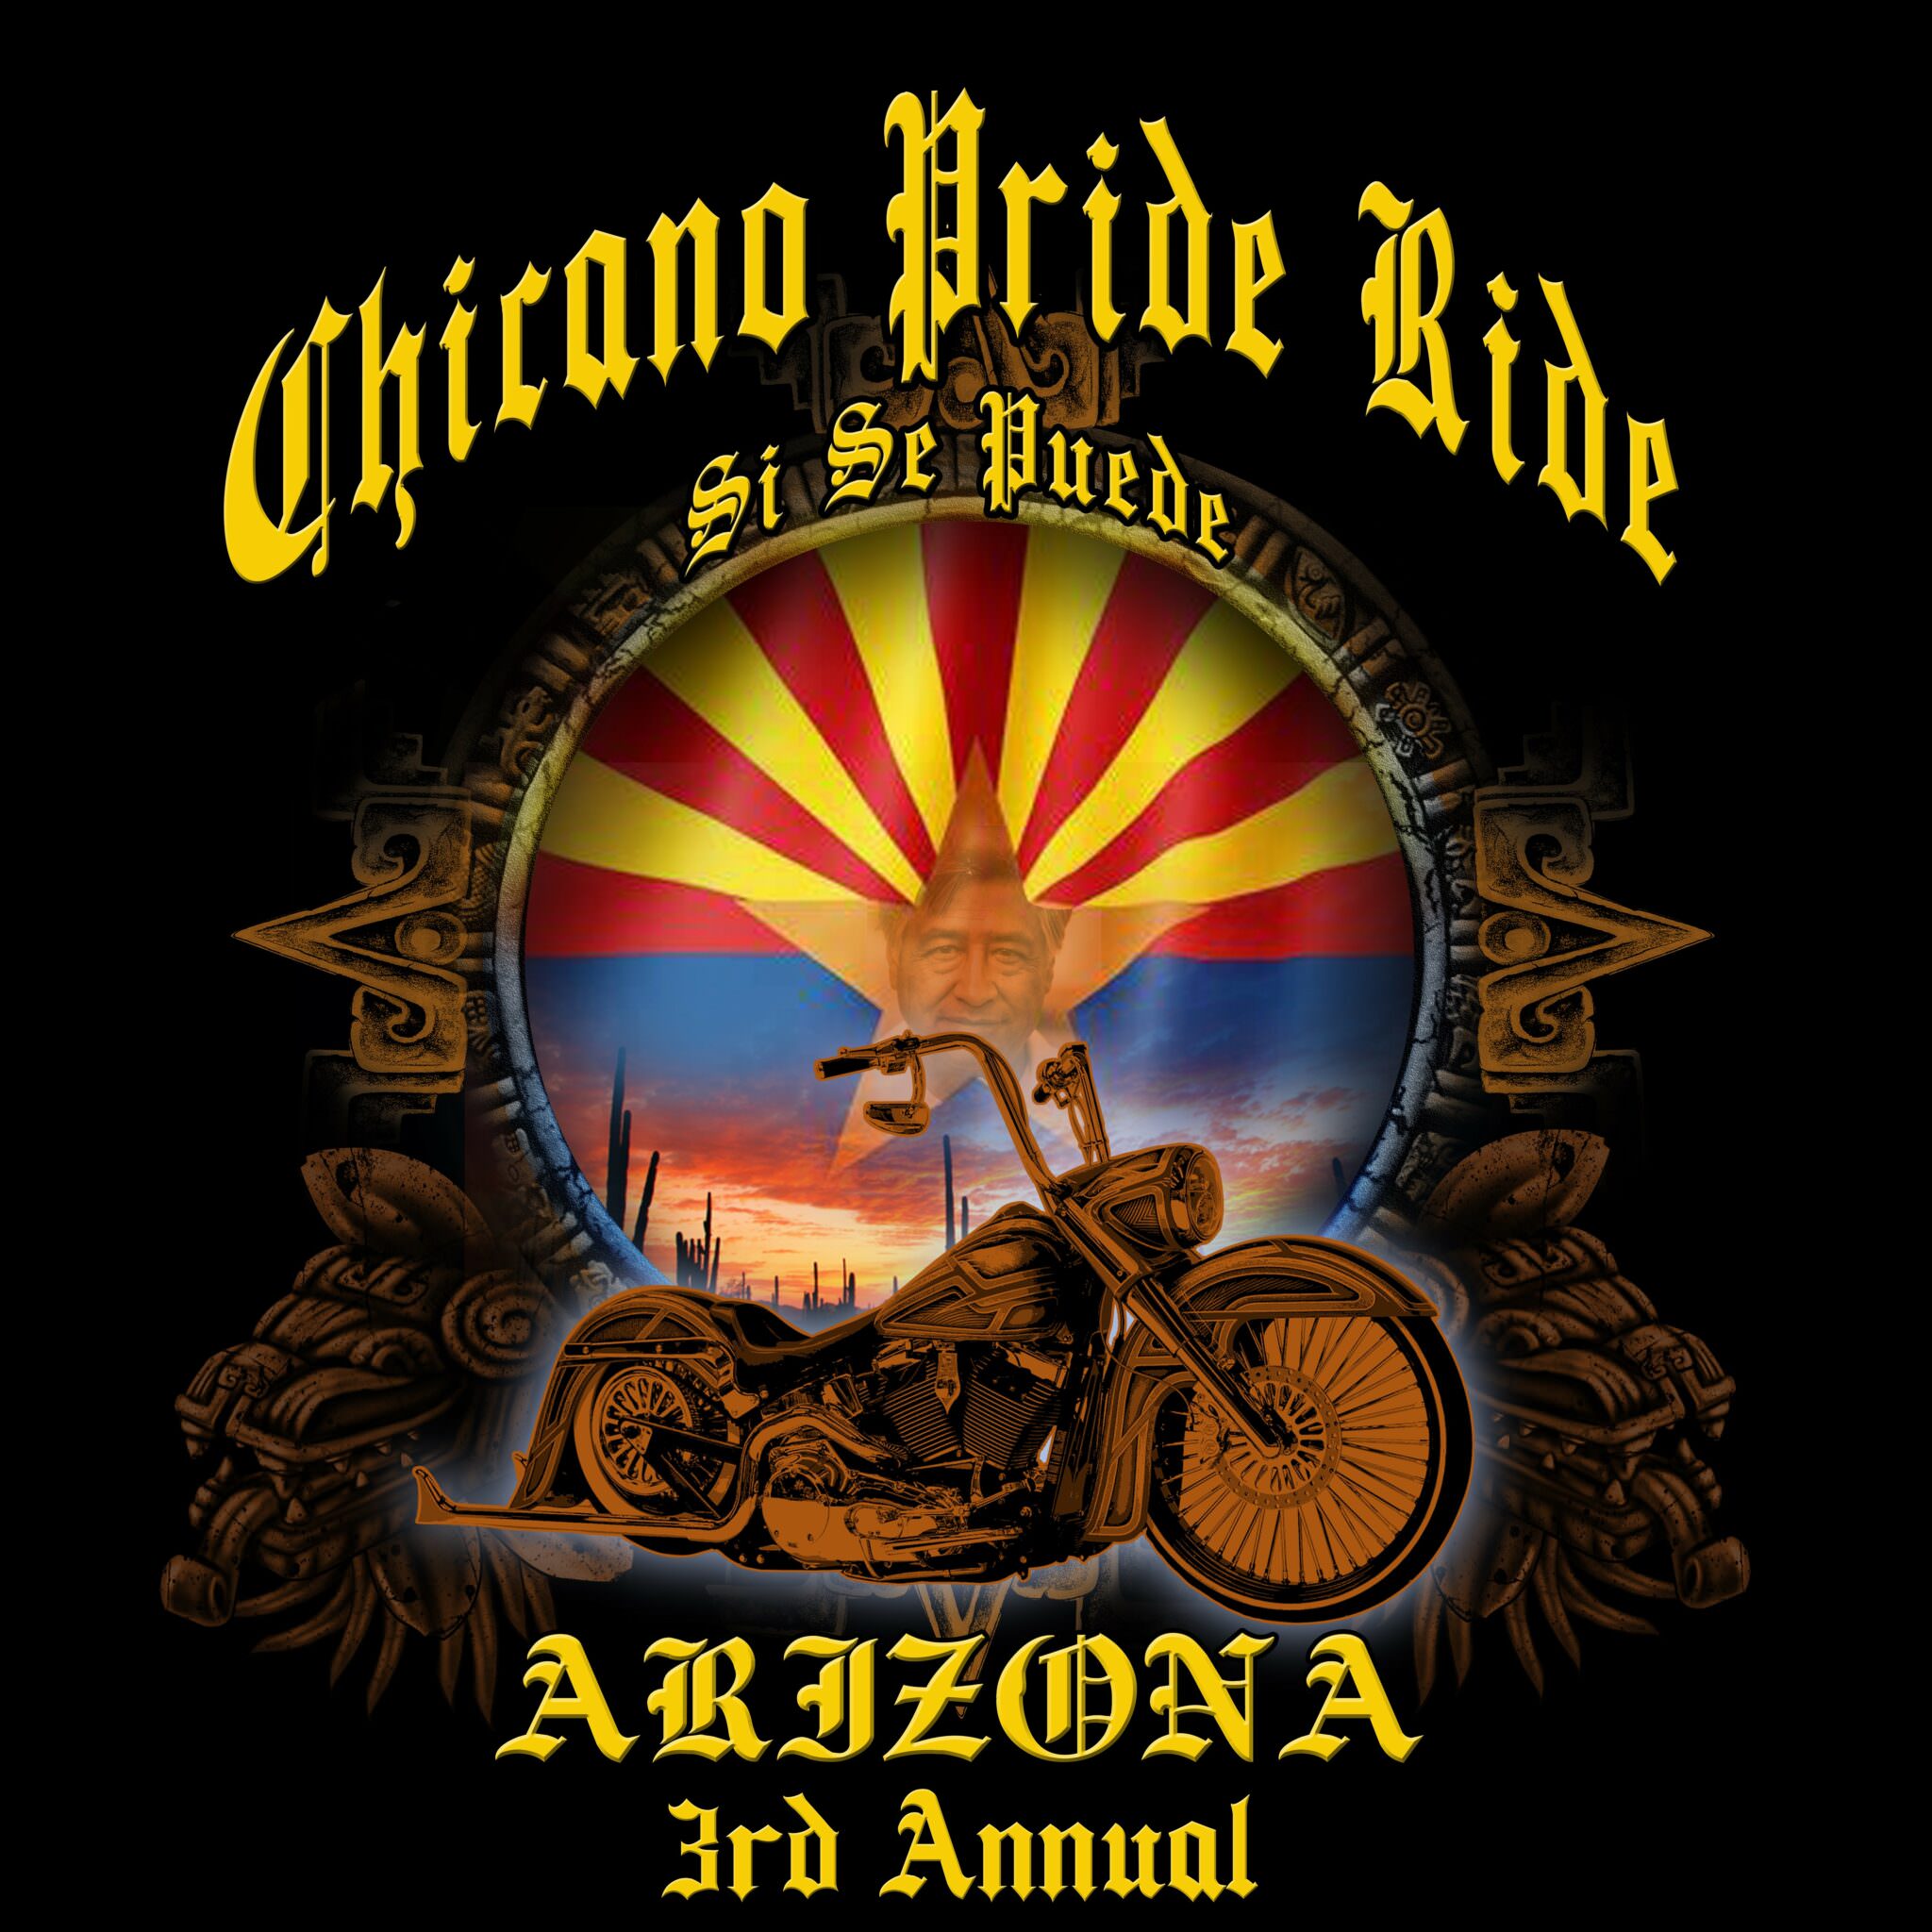 Chicano Pride Ride AZ, 3rd Annual Advance